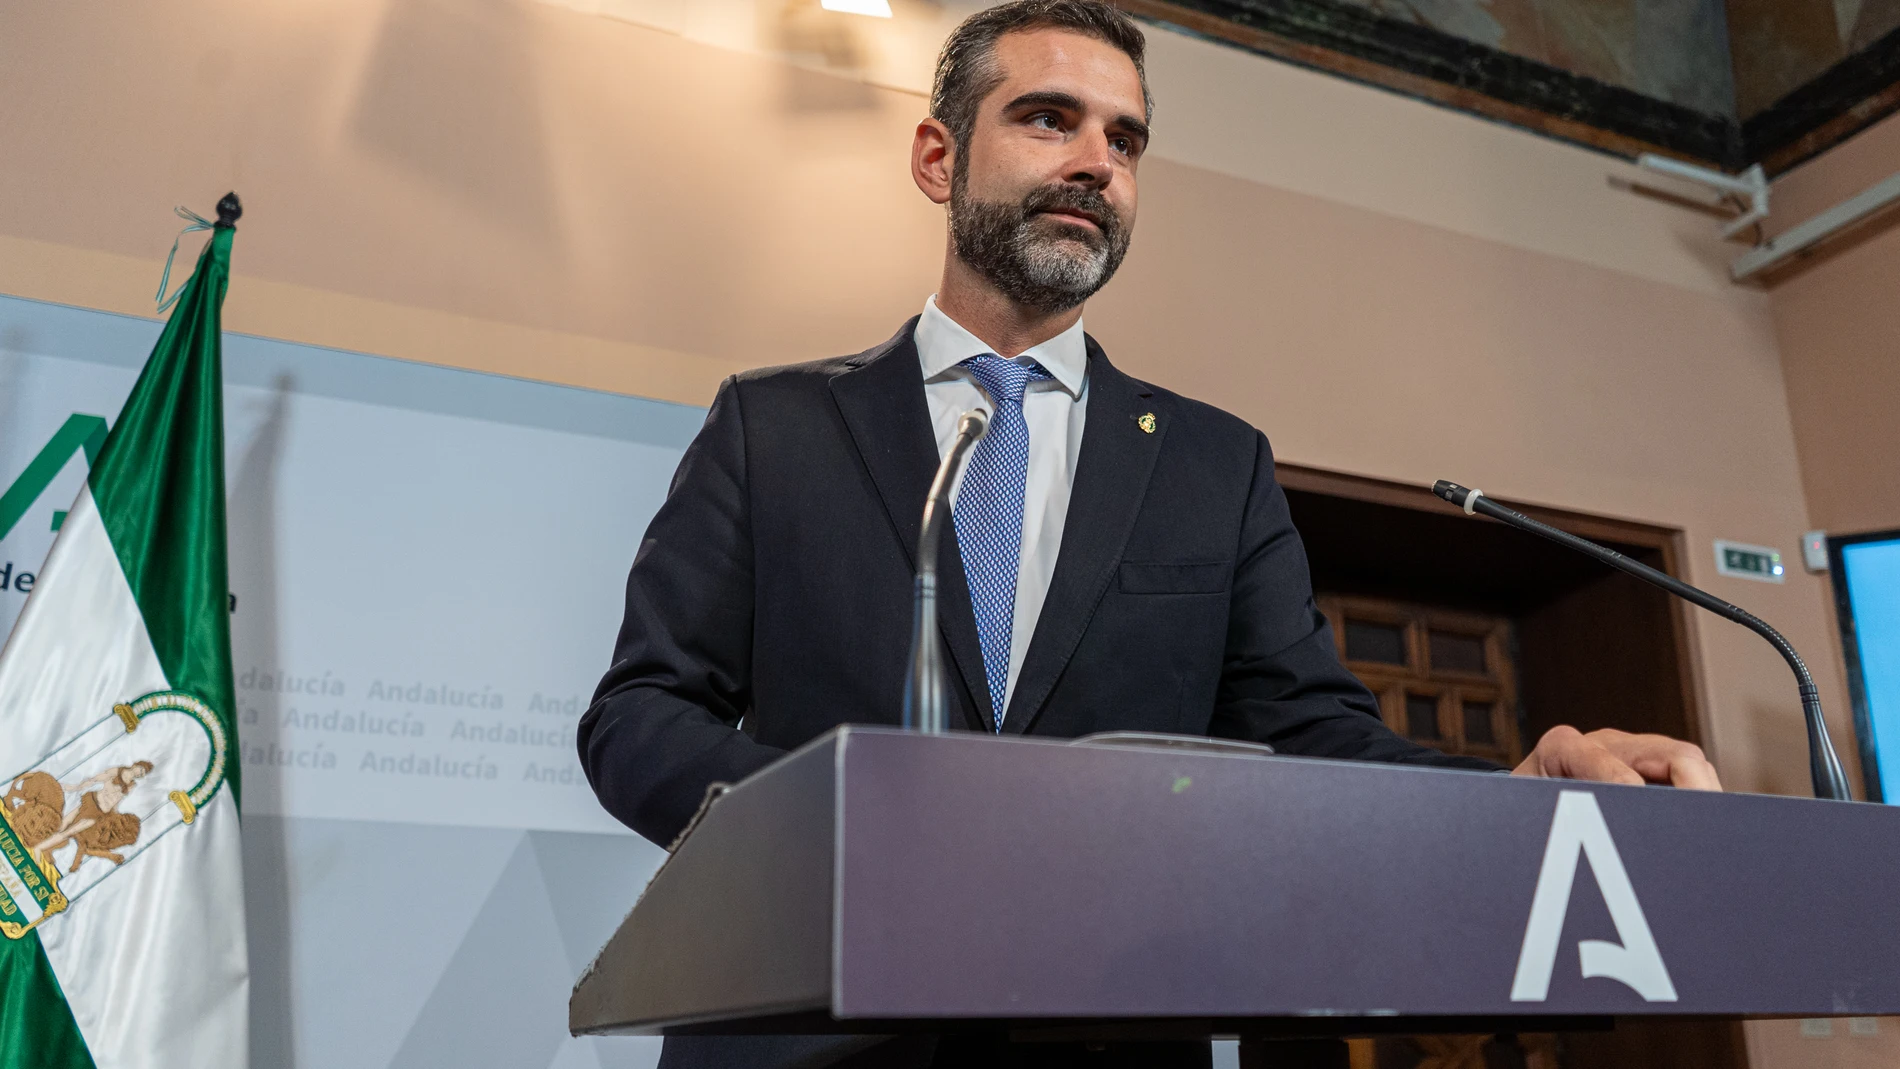 El consejero y portavoz del Gobierno andaluza, Ramón Fernández-Pacheco